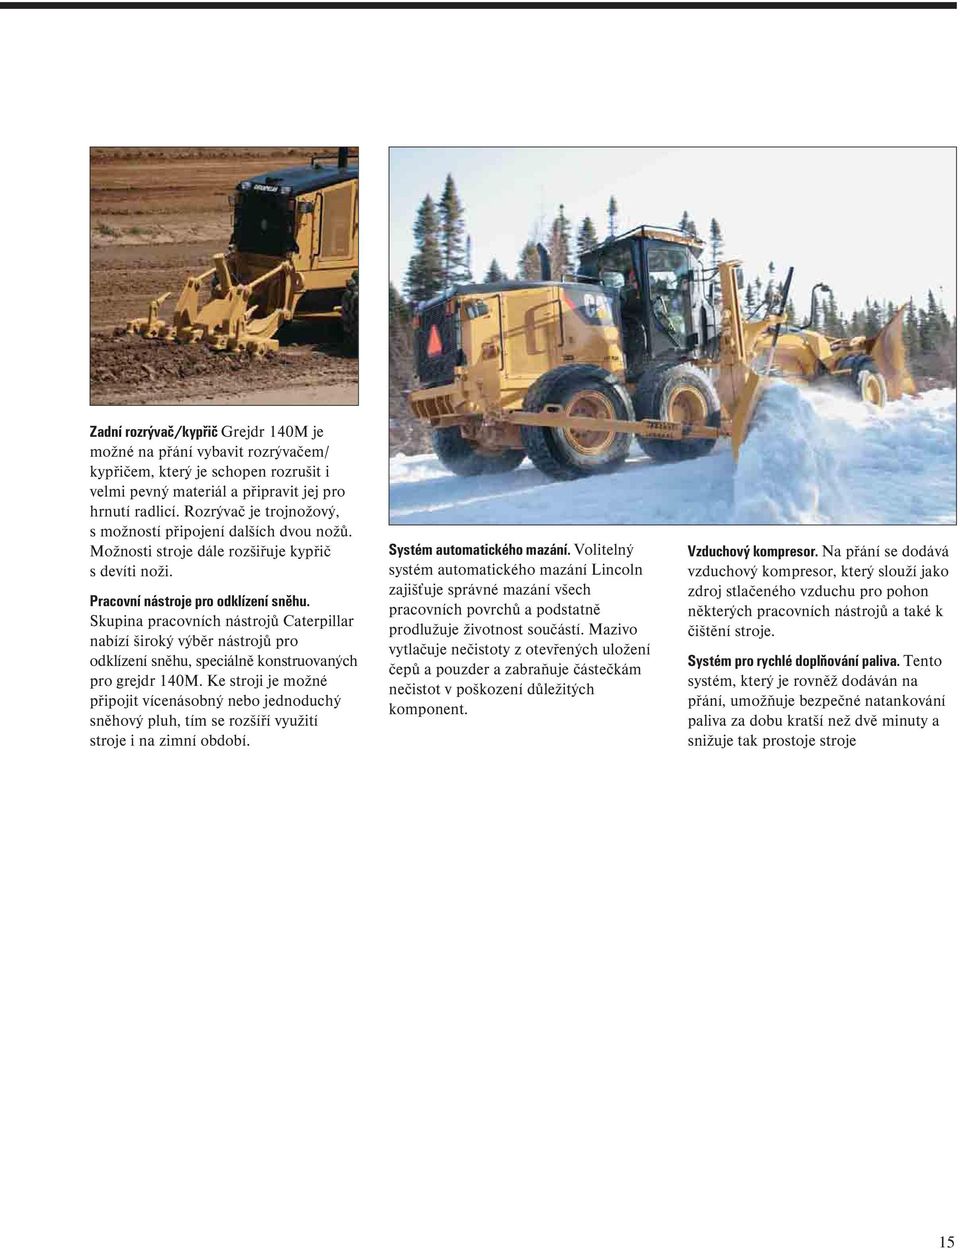 Skupina pracovních nástrojů Caterpillar nabízí široký výběr nástrojů pro odklízení sněhu, speciálně konstruovaných pro grejdr 140M.